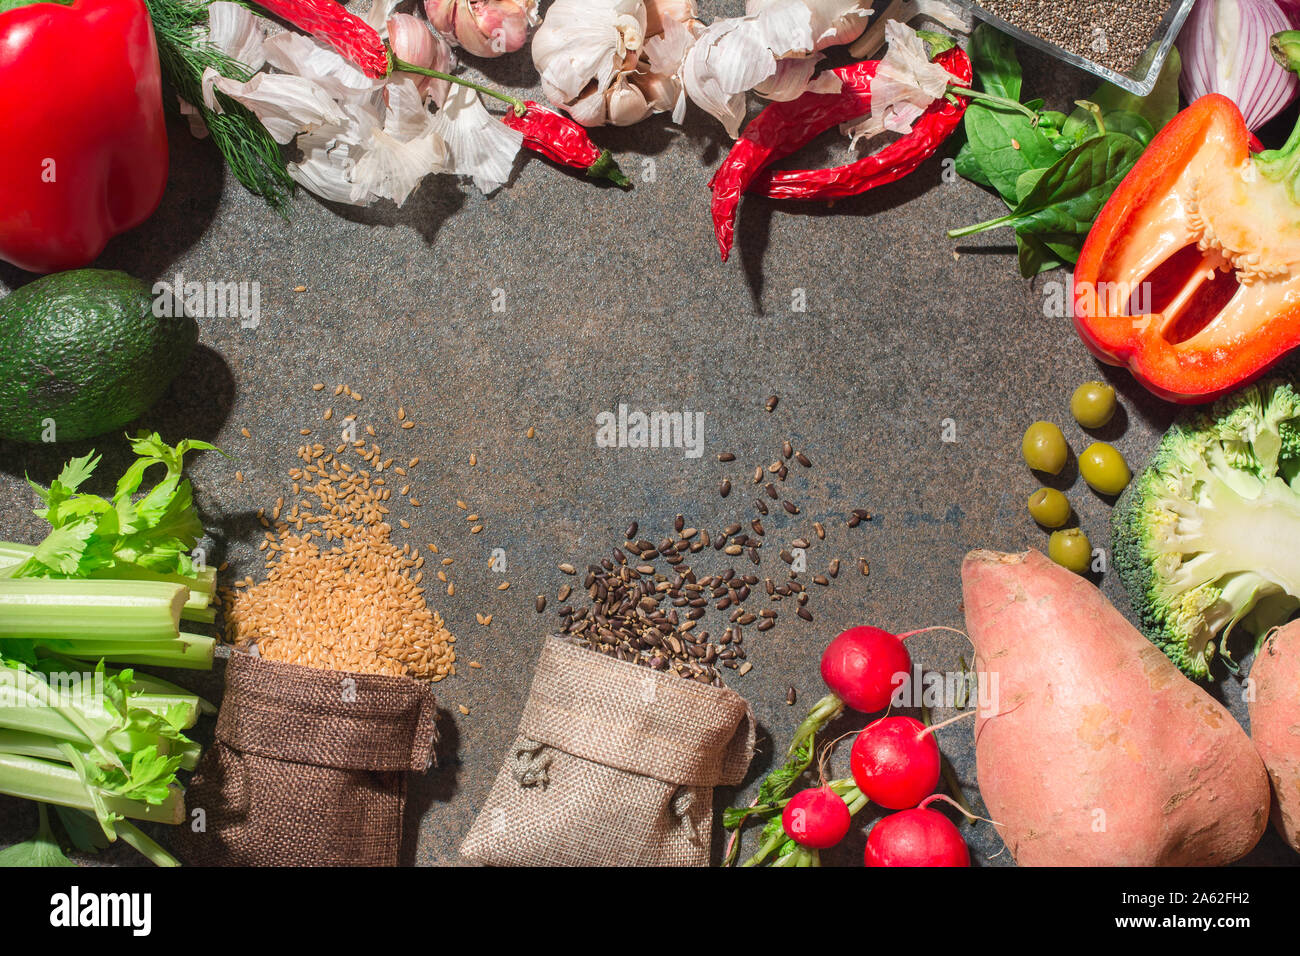 Farbenfroh und frisches Gemüse in einem Kreis angeordnet. Scatter Samen aus dem Beutel. Bild von nährstoffreichen Lebensmittel. Zutaten Zubereitung von gesunden Mea Stockfoto